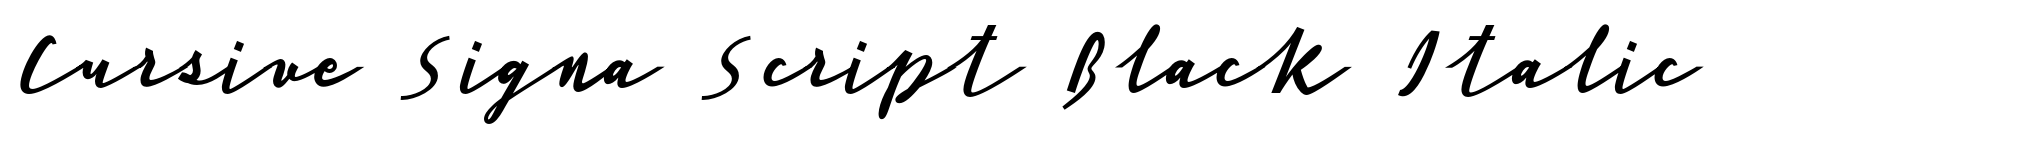 Cursive Signa Script Black Italic image